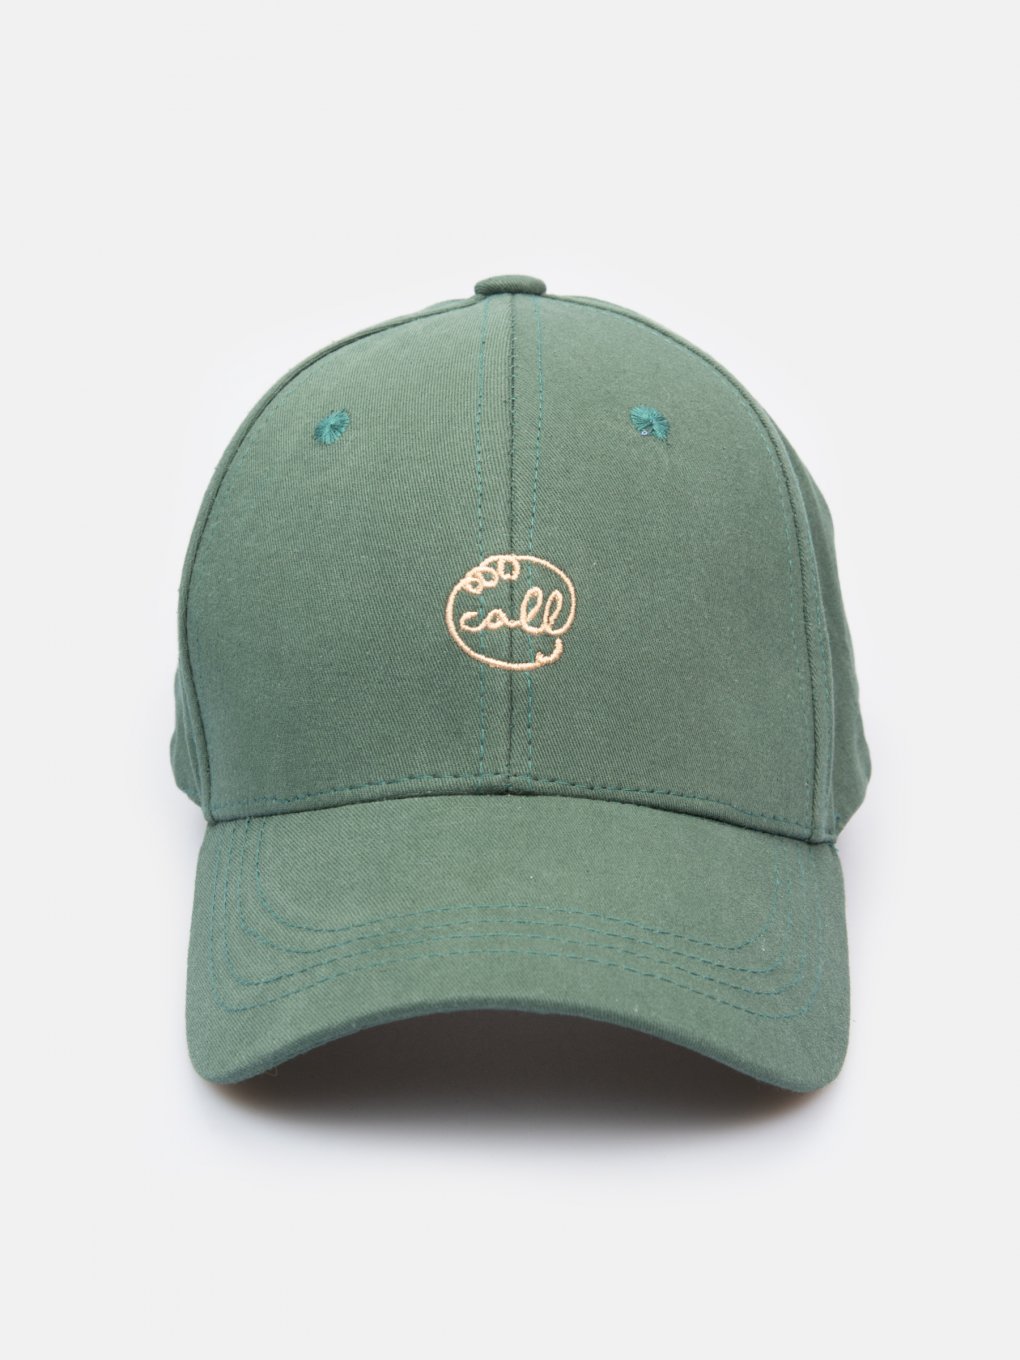 Baseball cap with embro